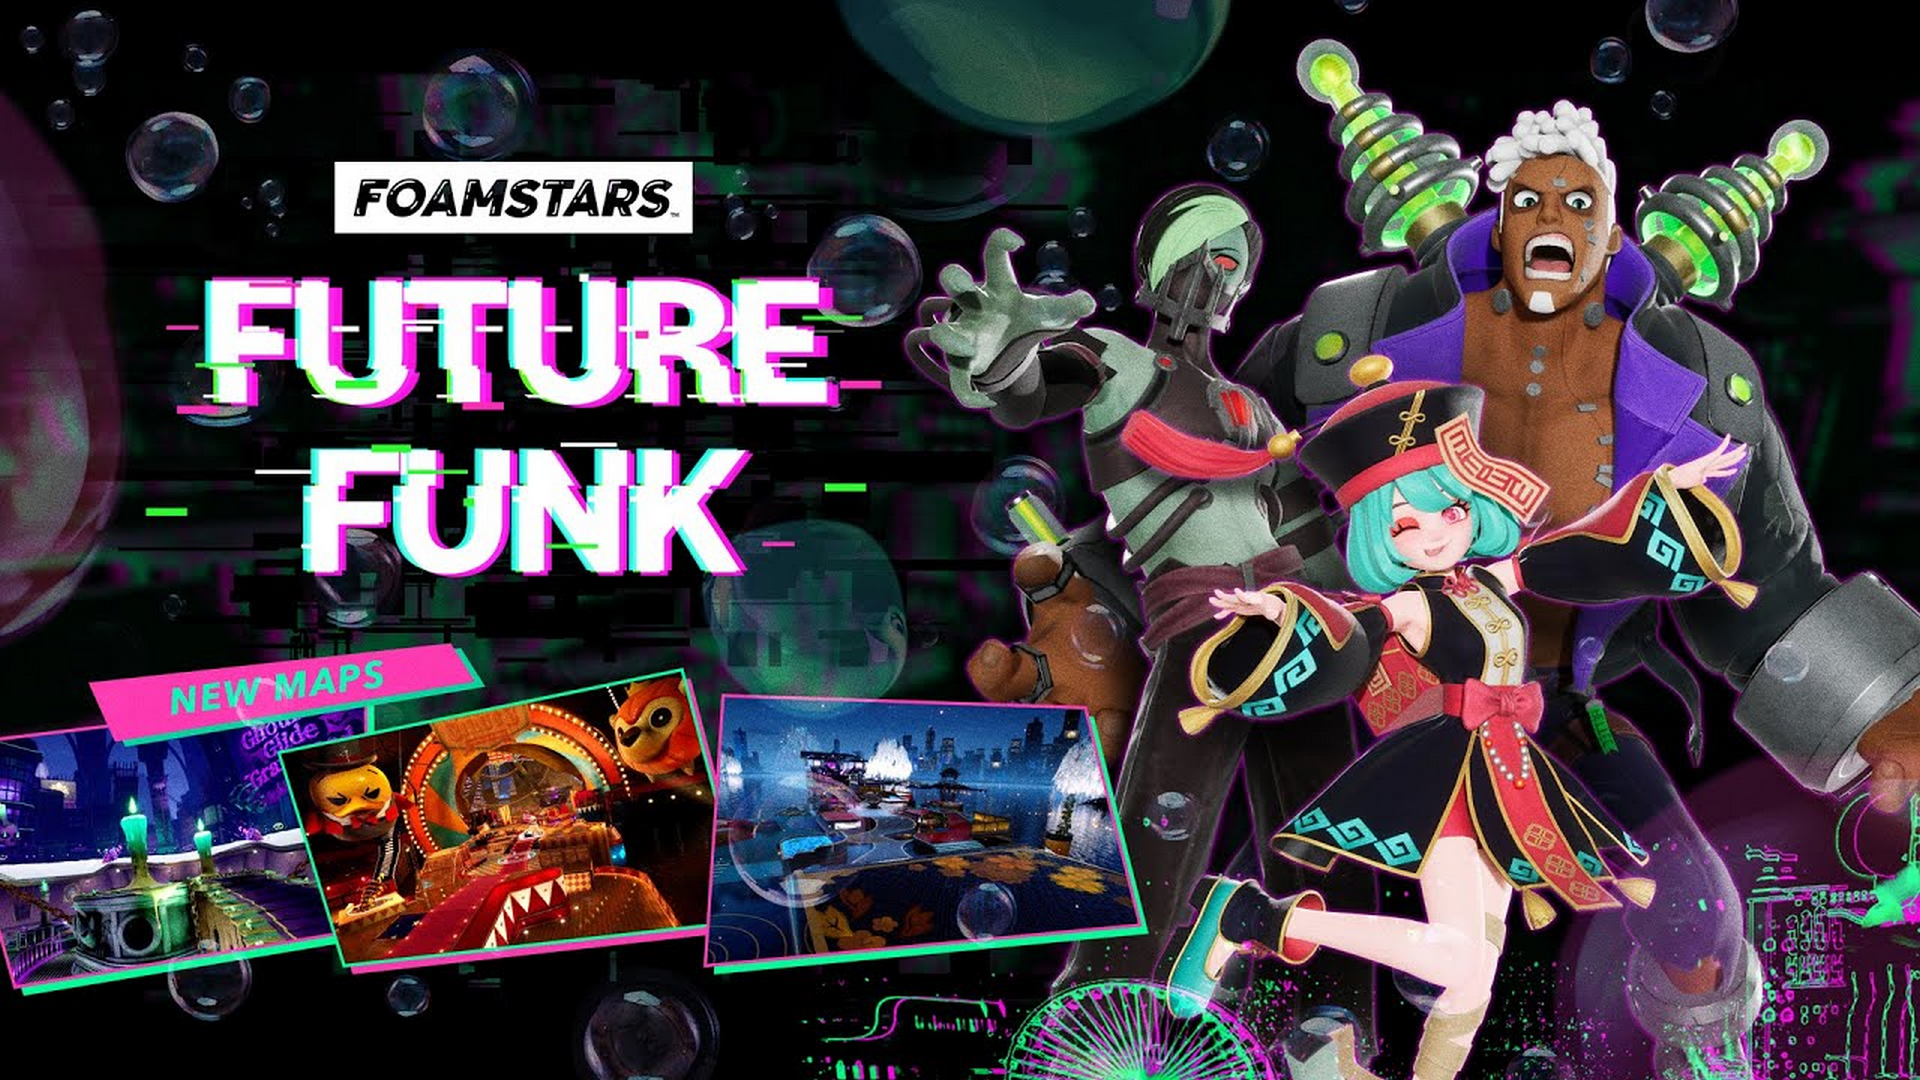 Square Enix Launches New Foamstars Season – “Future Funk”